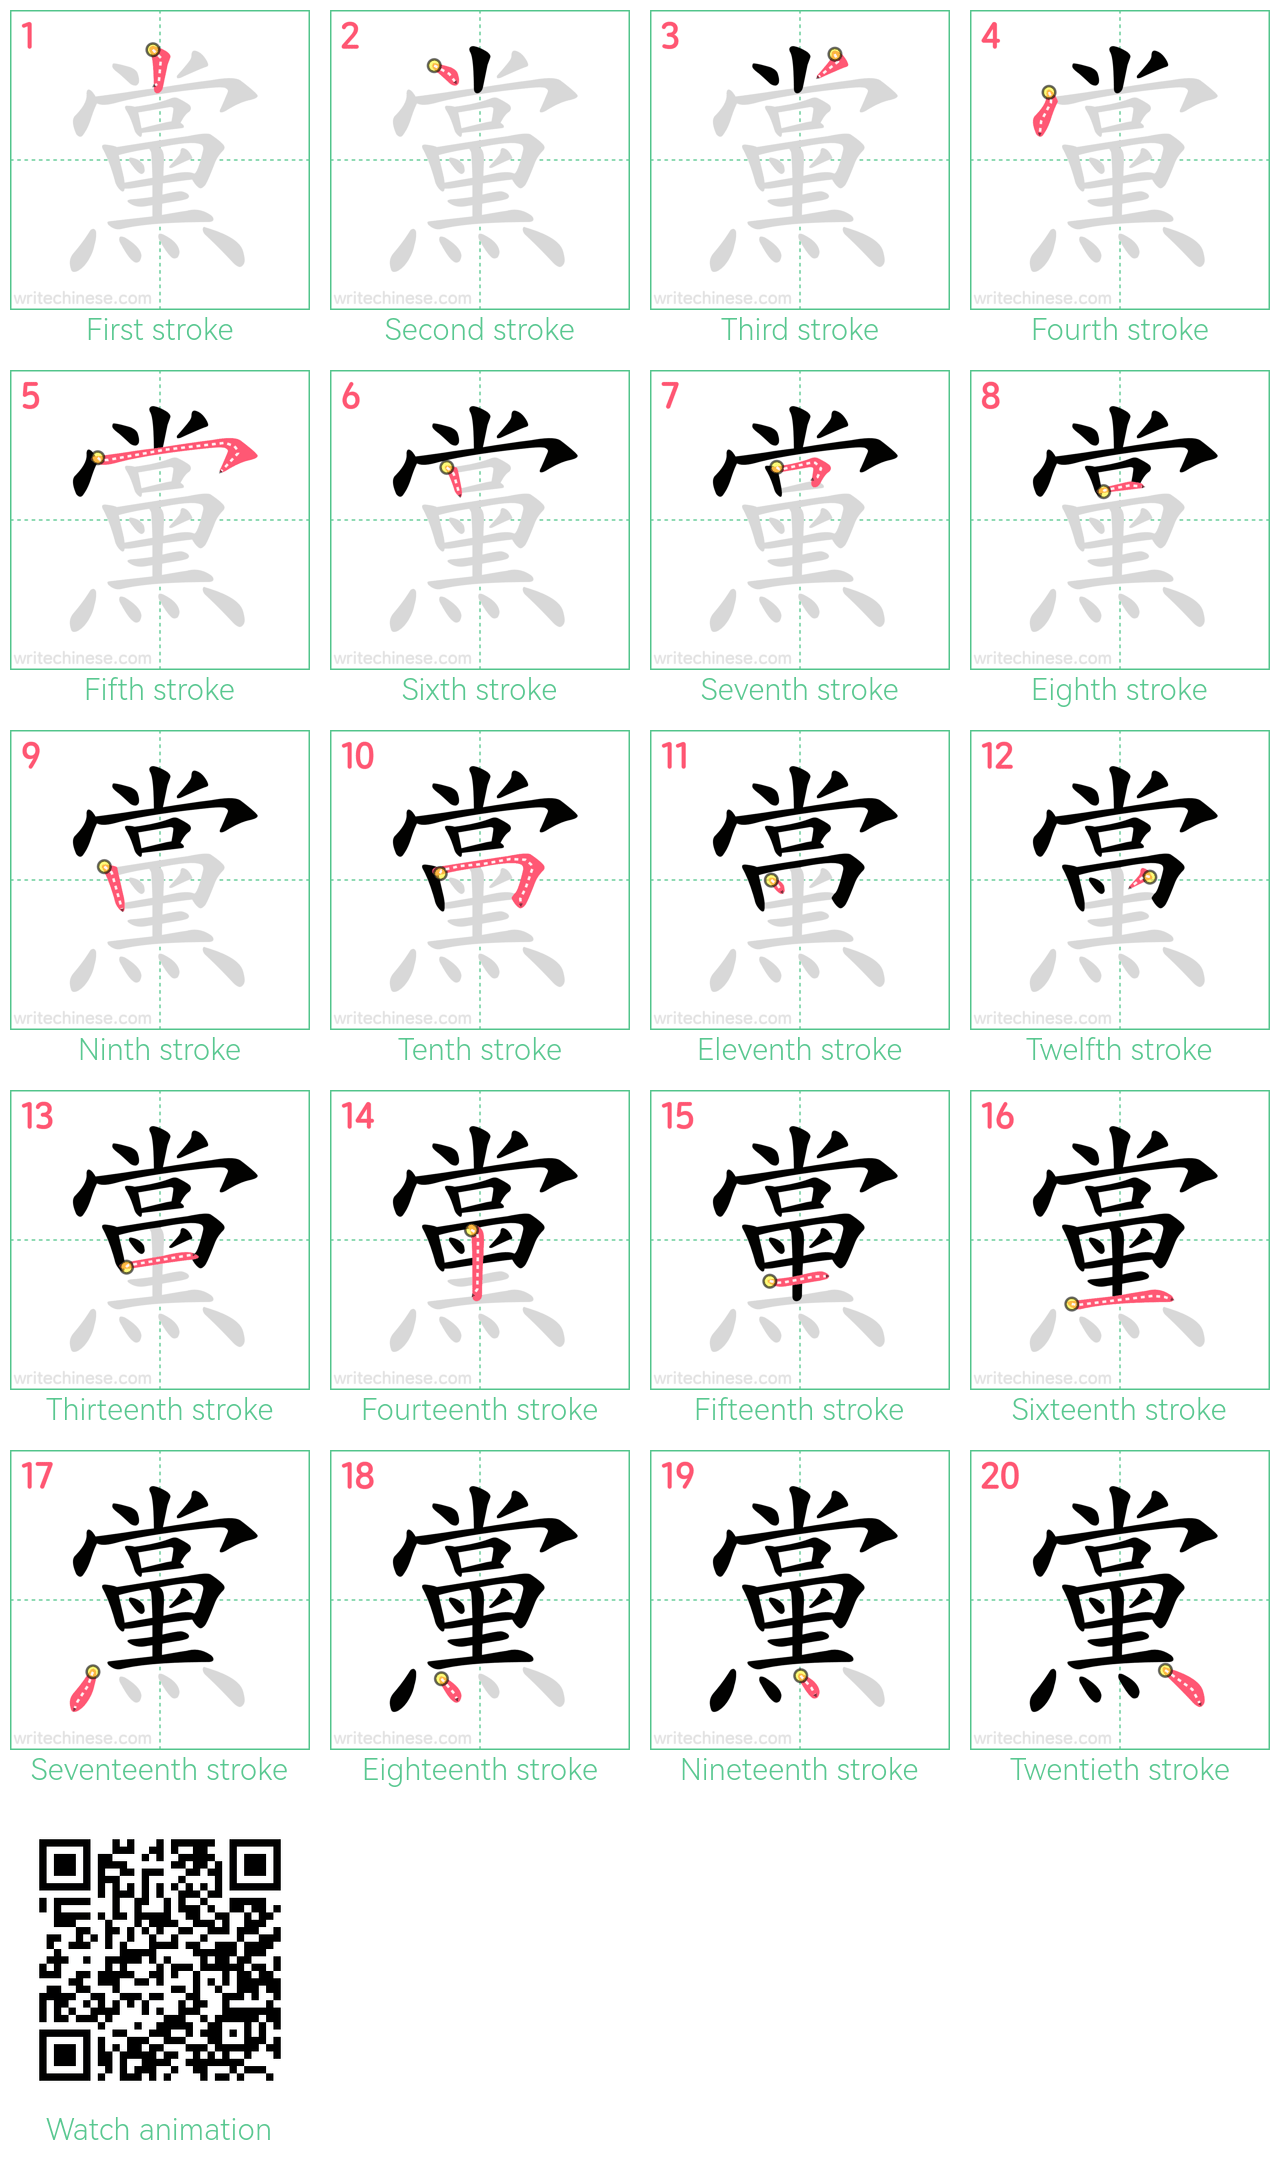 黨 step-by-step stroke order diagrams